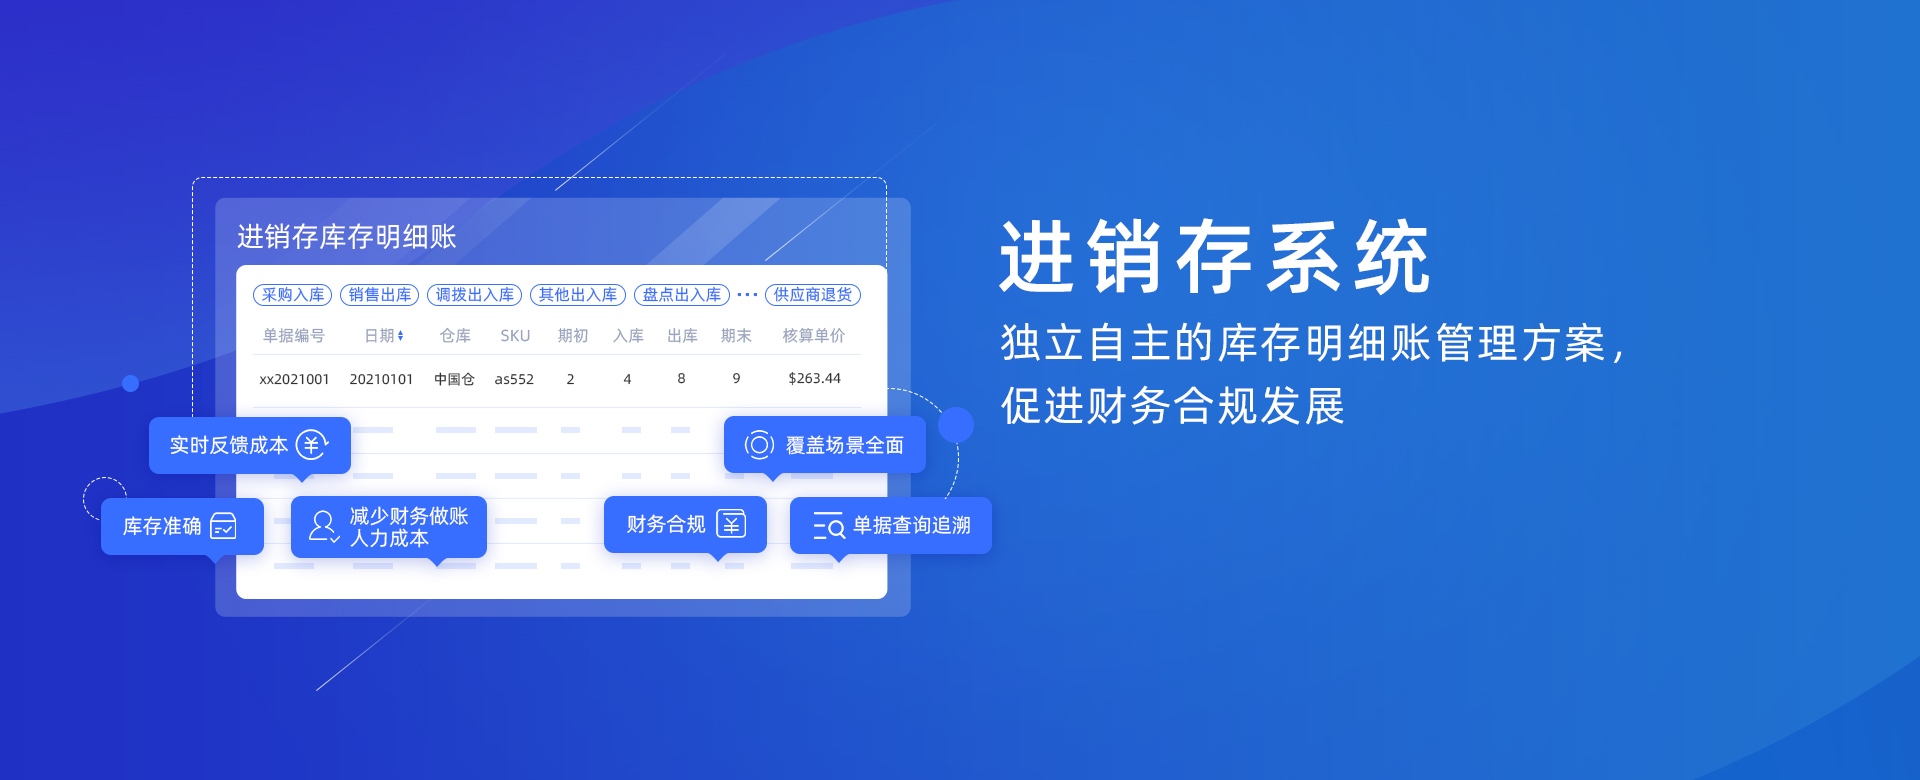 爱博app官网(中国)有限公司进销存系统